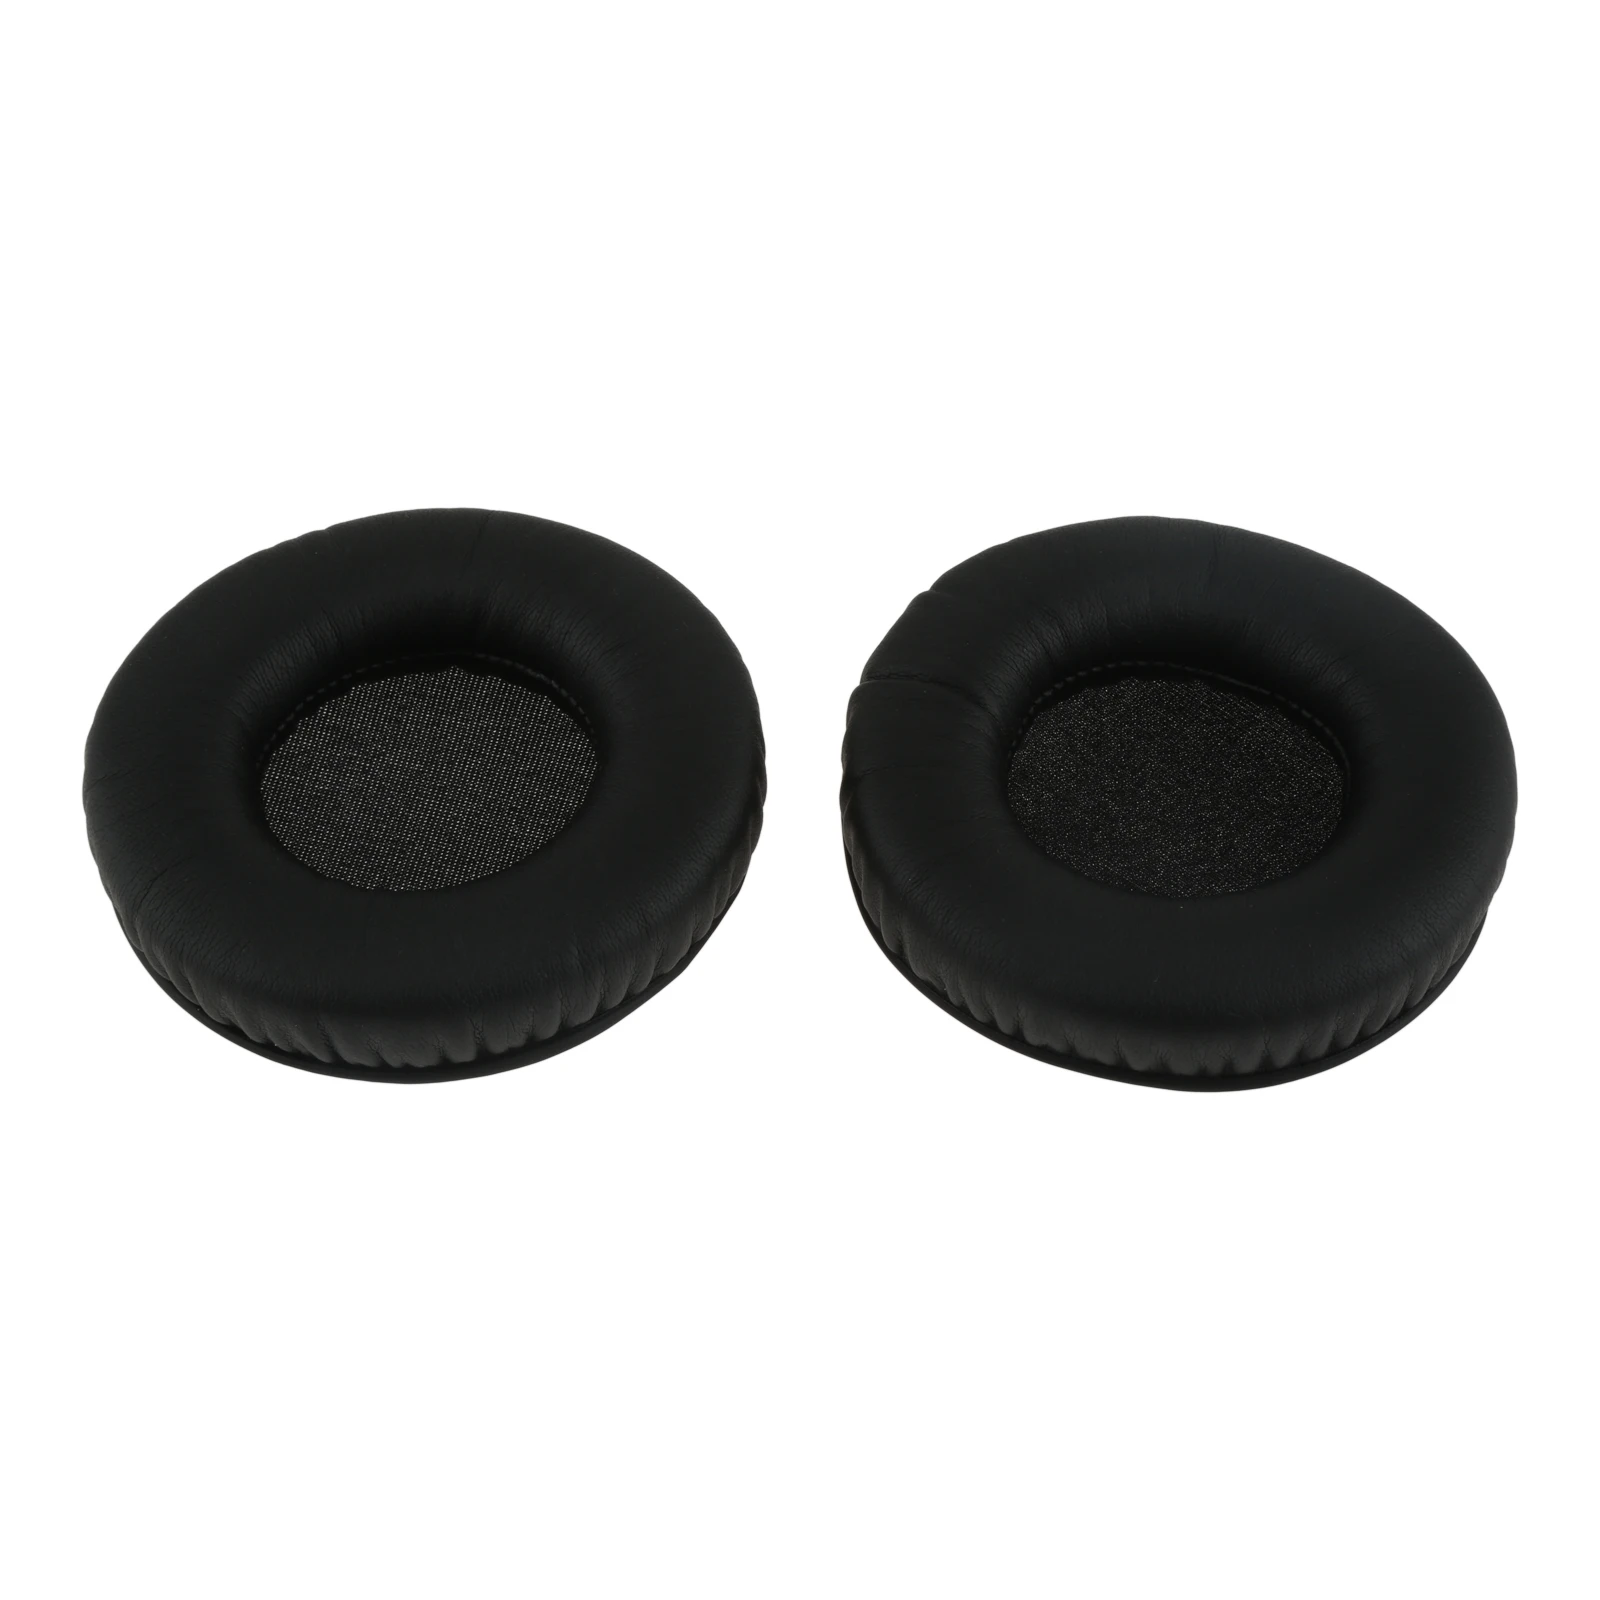 1 Pair Earpads Headphone Ear Pads for Sennheiser Urbanite XL Ear Pads Headphone Earpads Replacement Cushion Cover Repair Parts